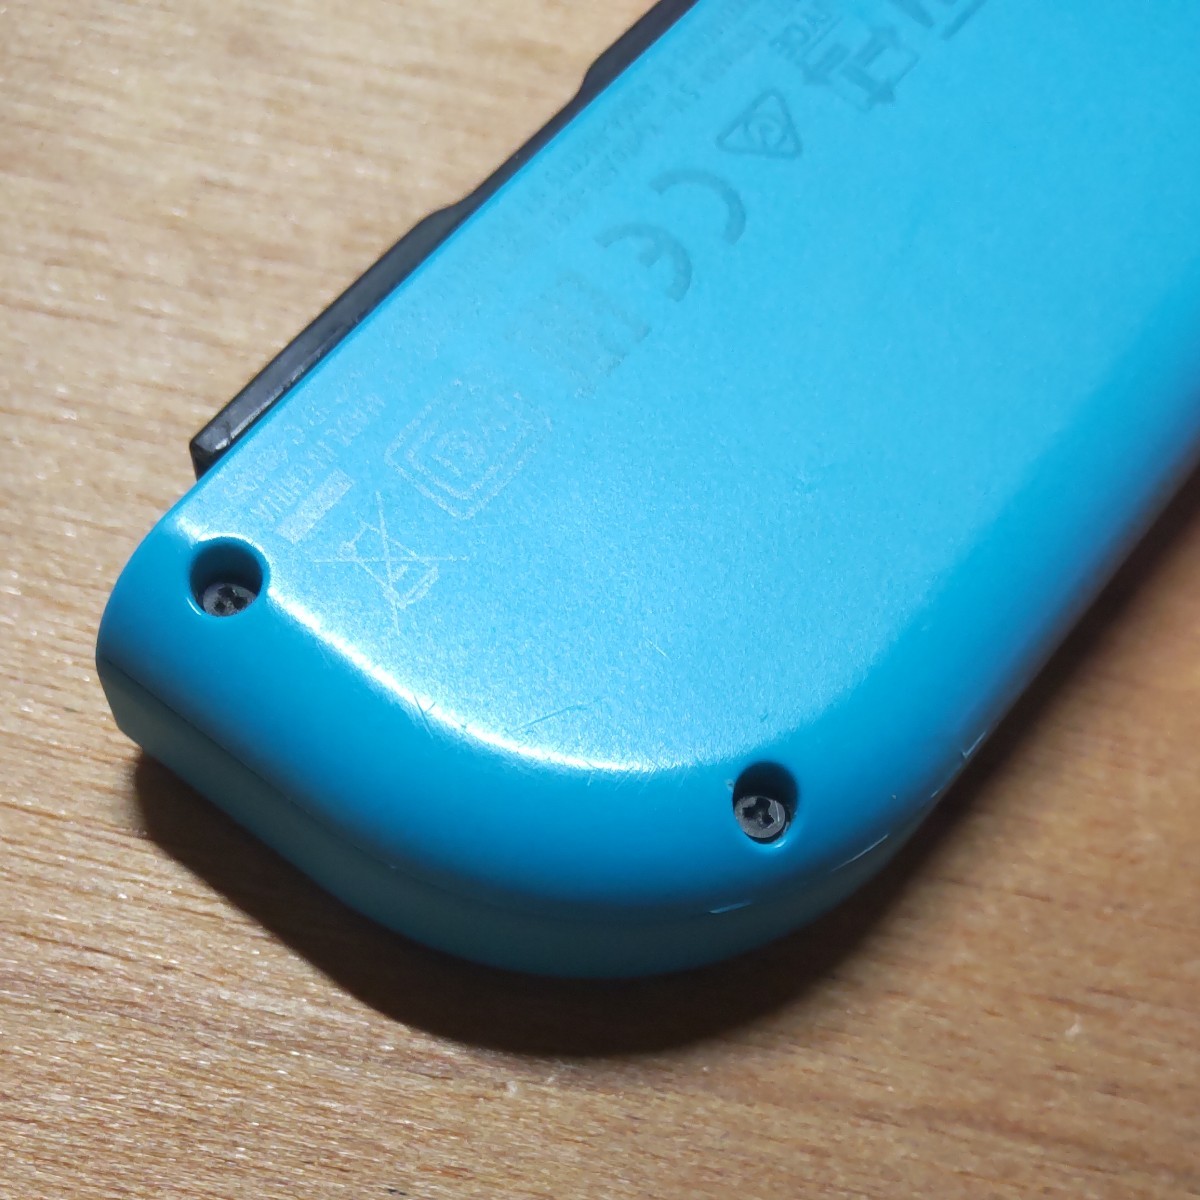 ニンテンドースイッチ ジョイコン 左 ネオンブルー Nintendo Switch Joy-Con 動作良好 中古修理品 保証付